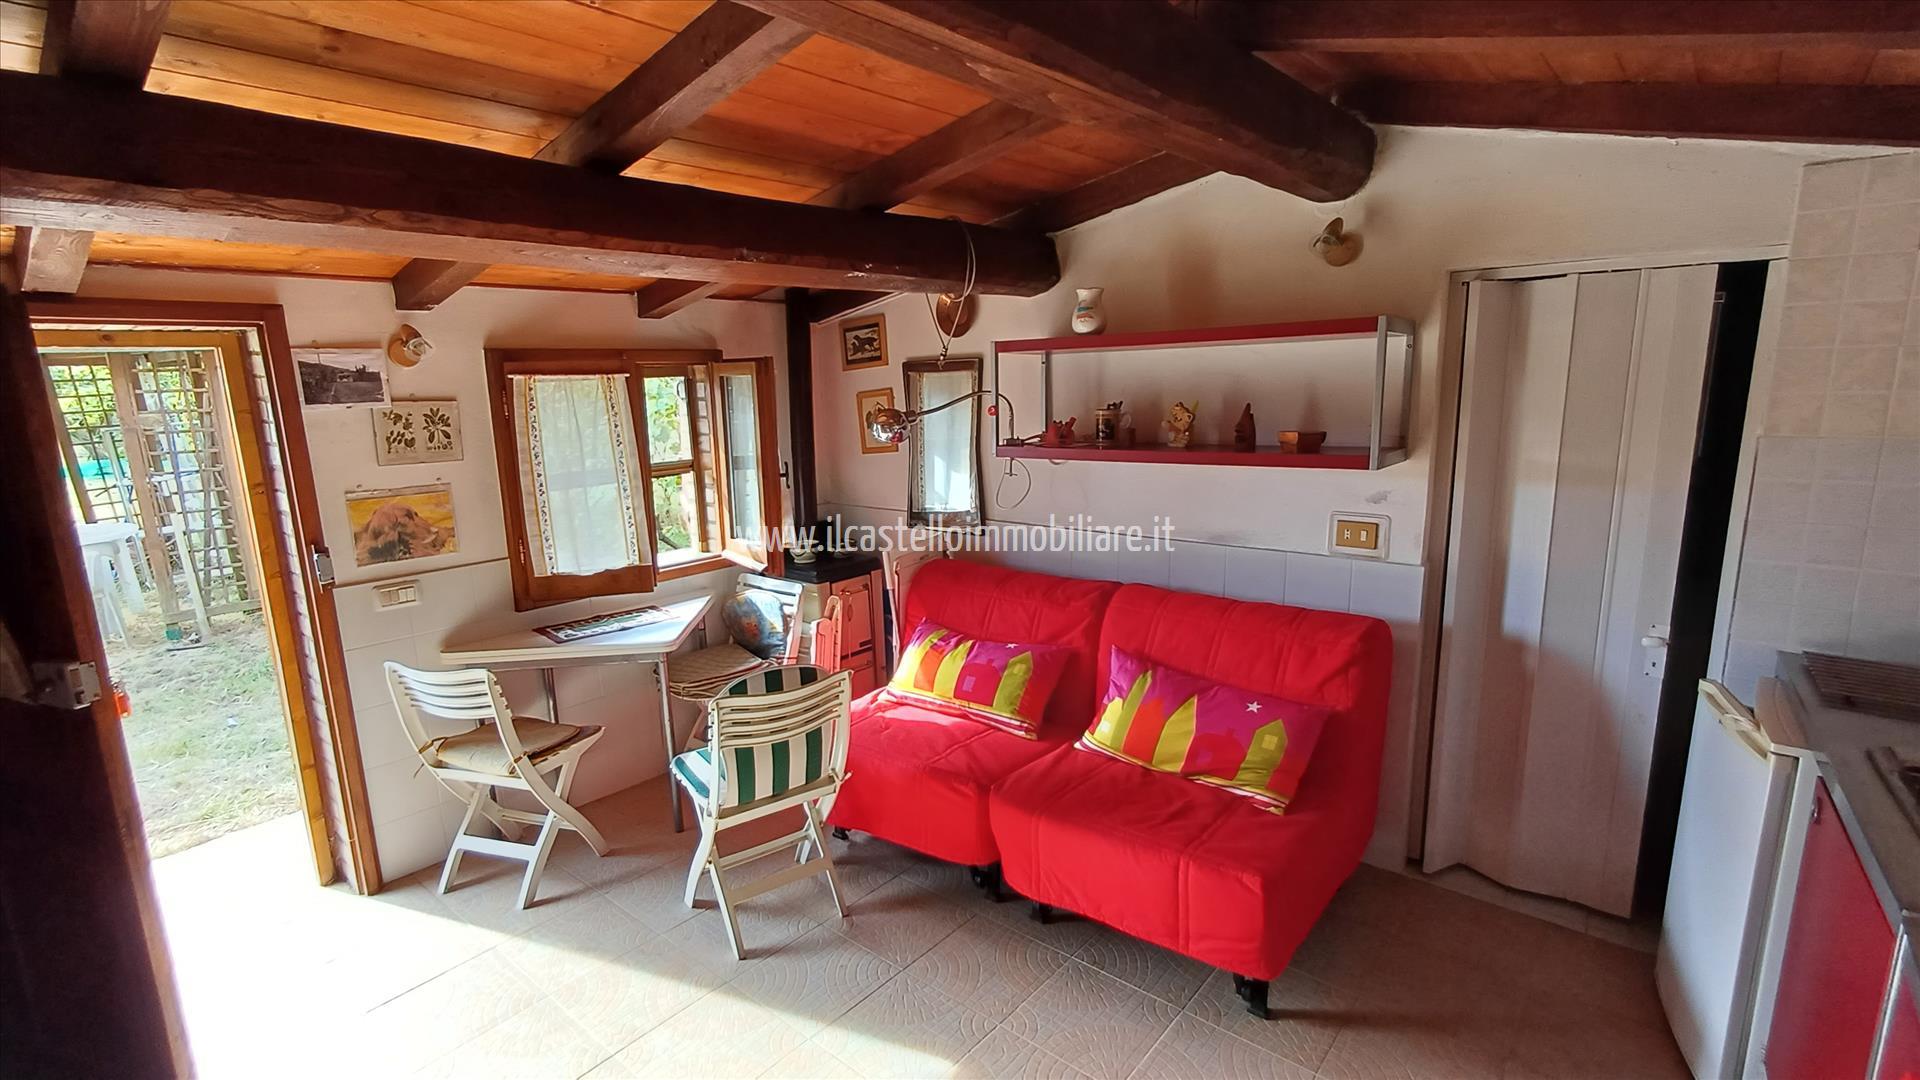 Villa in vendita a Sarteano, 1 locali, prezzo € 70.000 | PortaleAgenzieImmobiliari.it